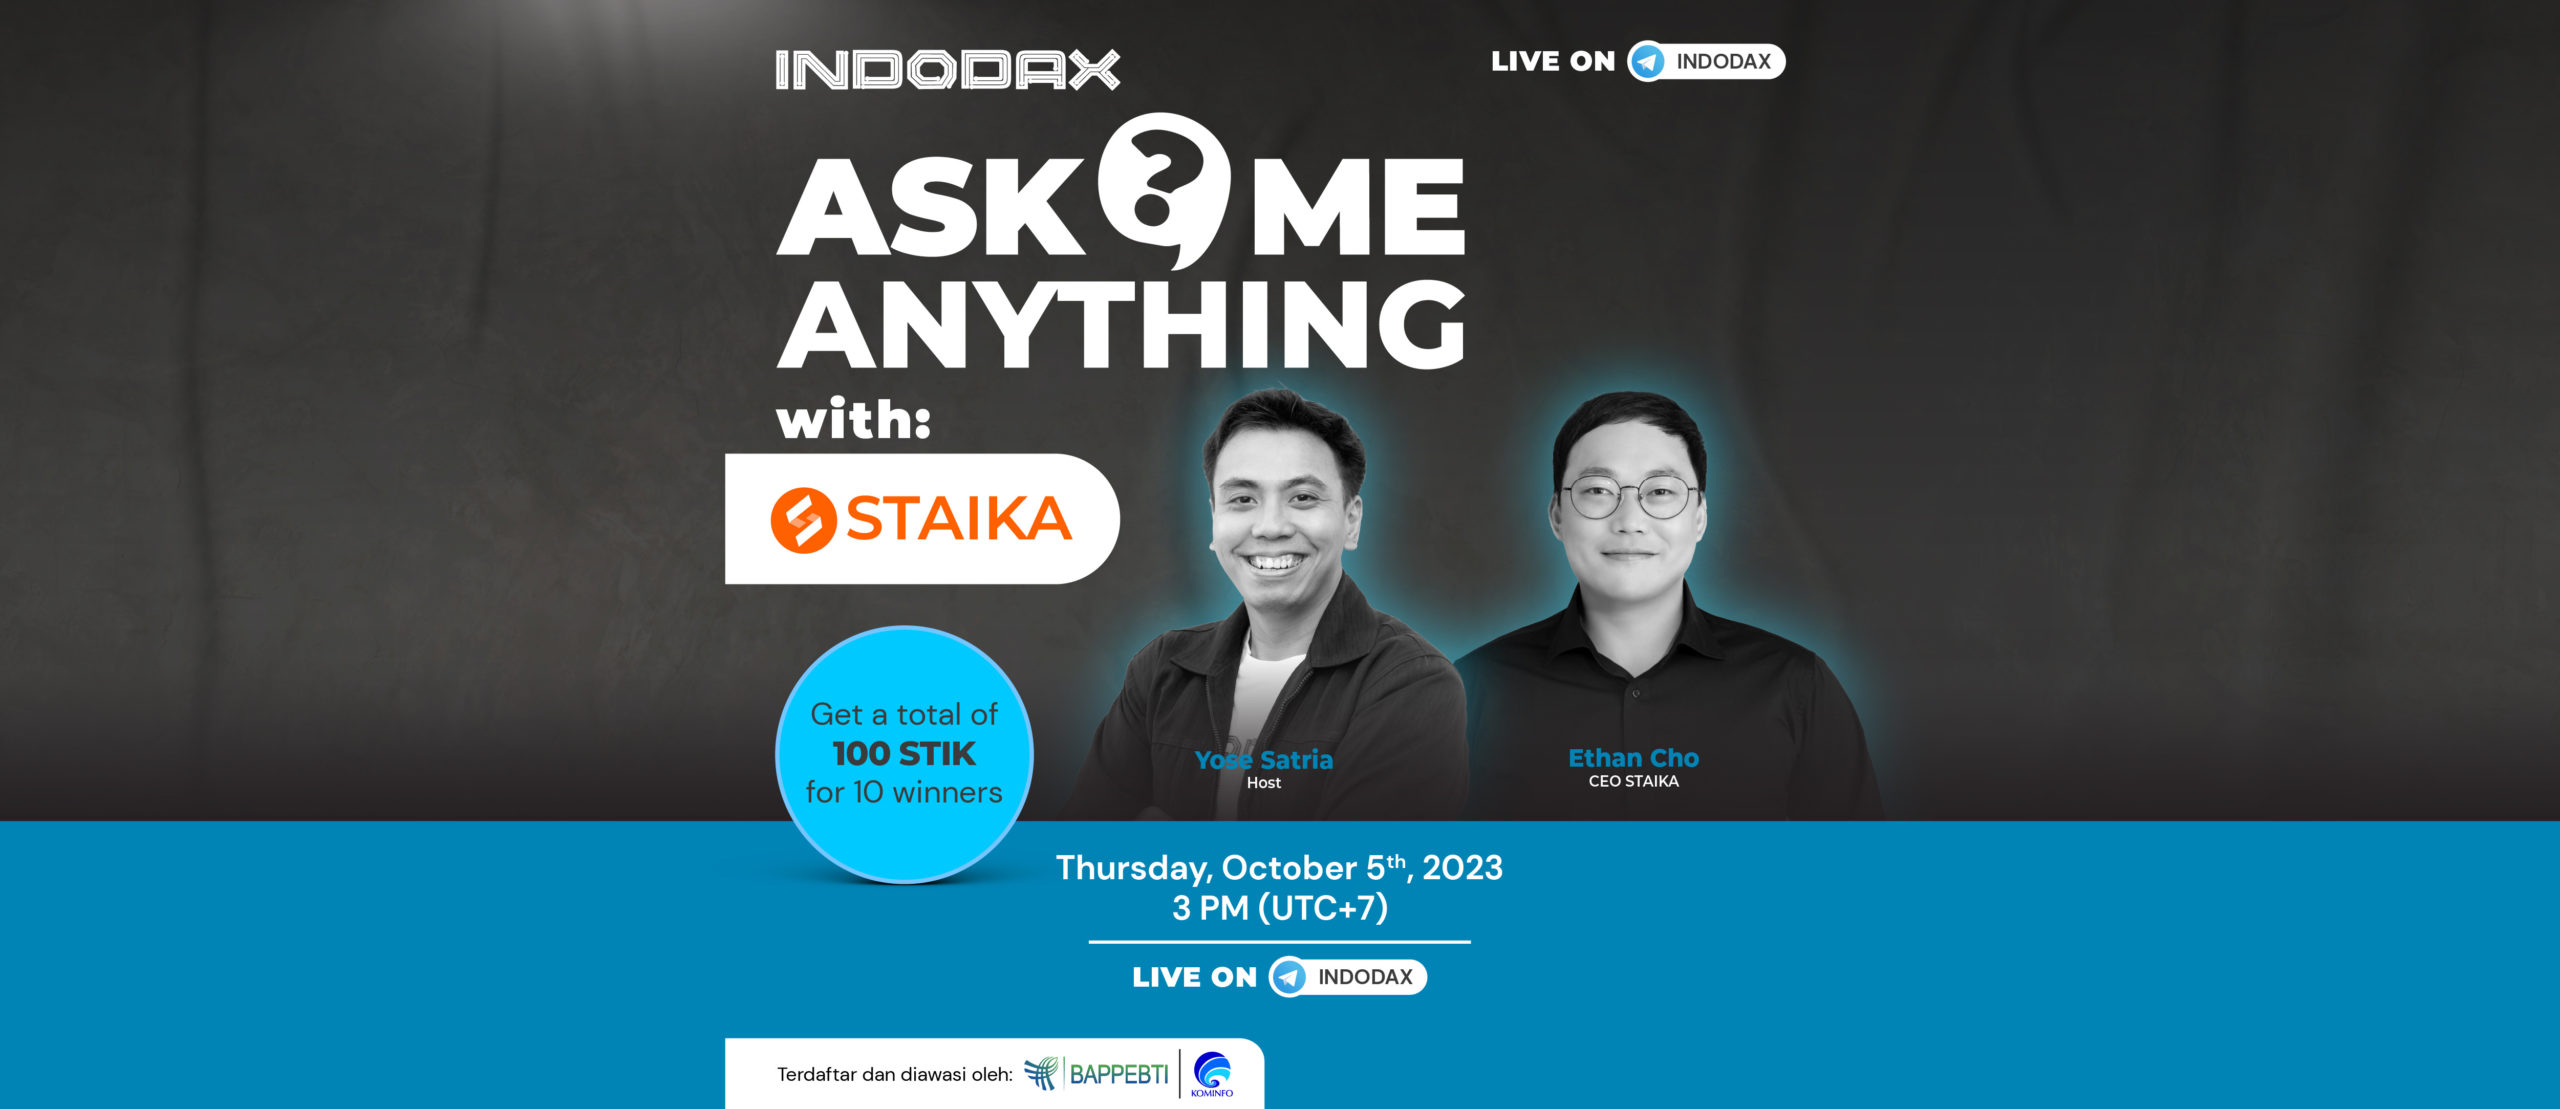 Di Ask Me Anything edisi kali ini, kita akan membahas lebih dalam mengenai STAIKA bersama Ethan Cho, CEO STAIKA. Kamu juga berkesempatan buat menangin hadiah dengan total 100 STIK untuk 10 pemenang, lho!